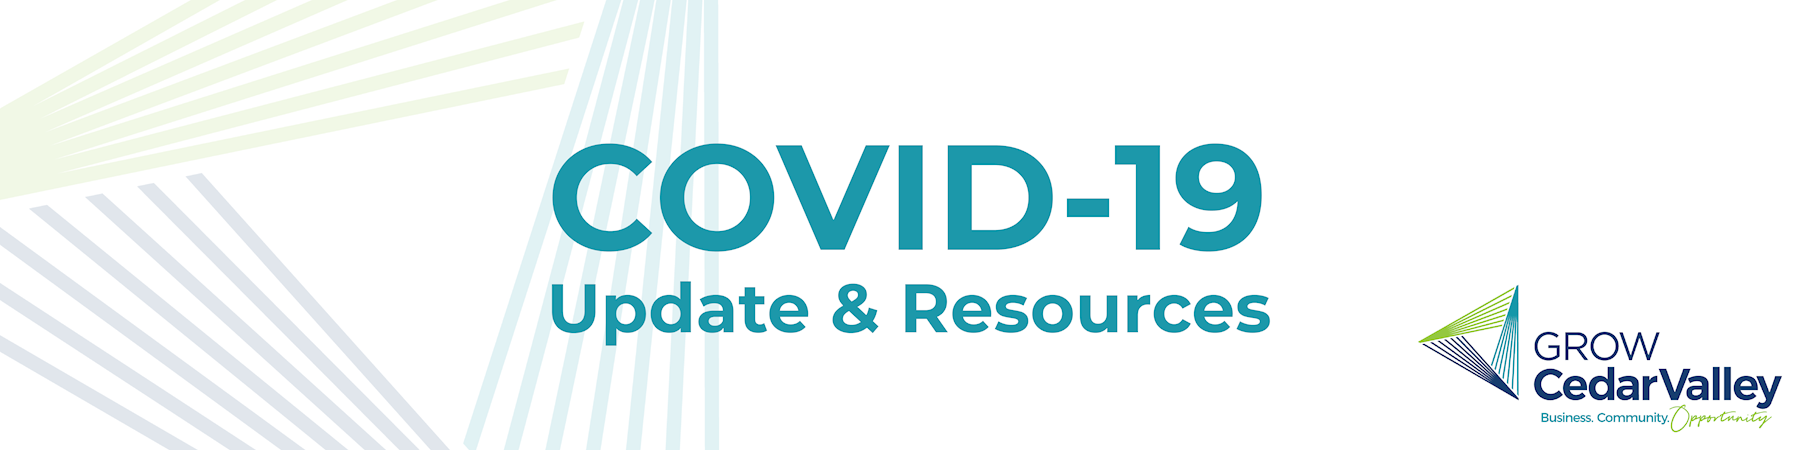 Grow Cedar Valley COVID-19 Resources